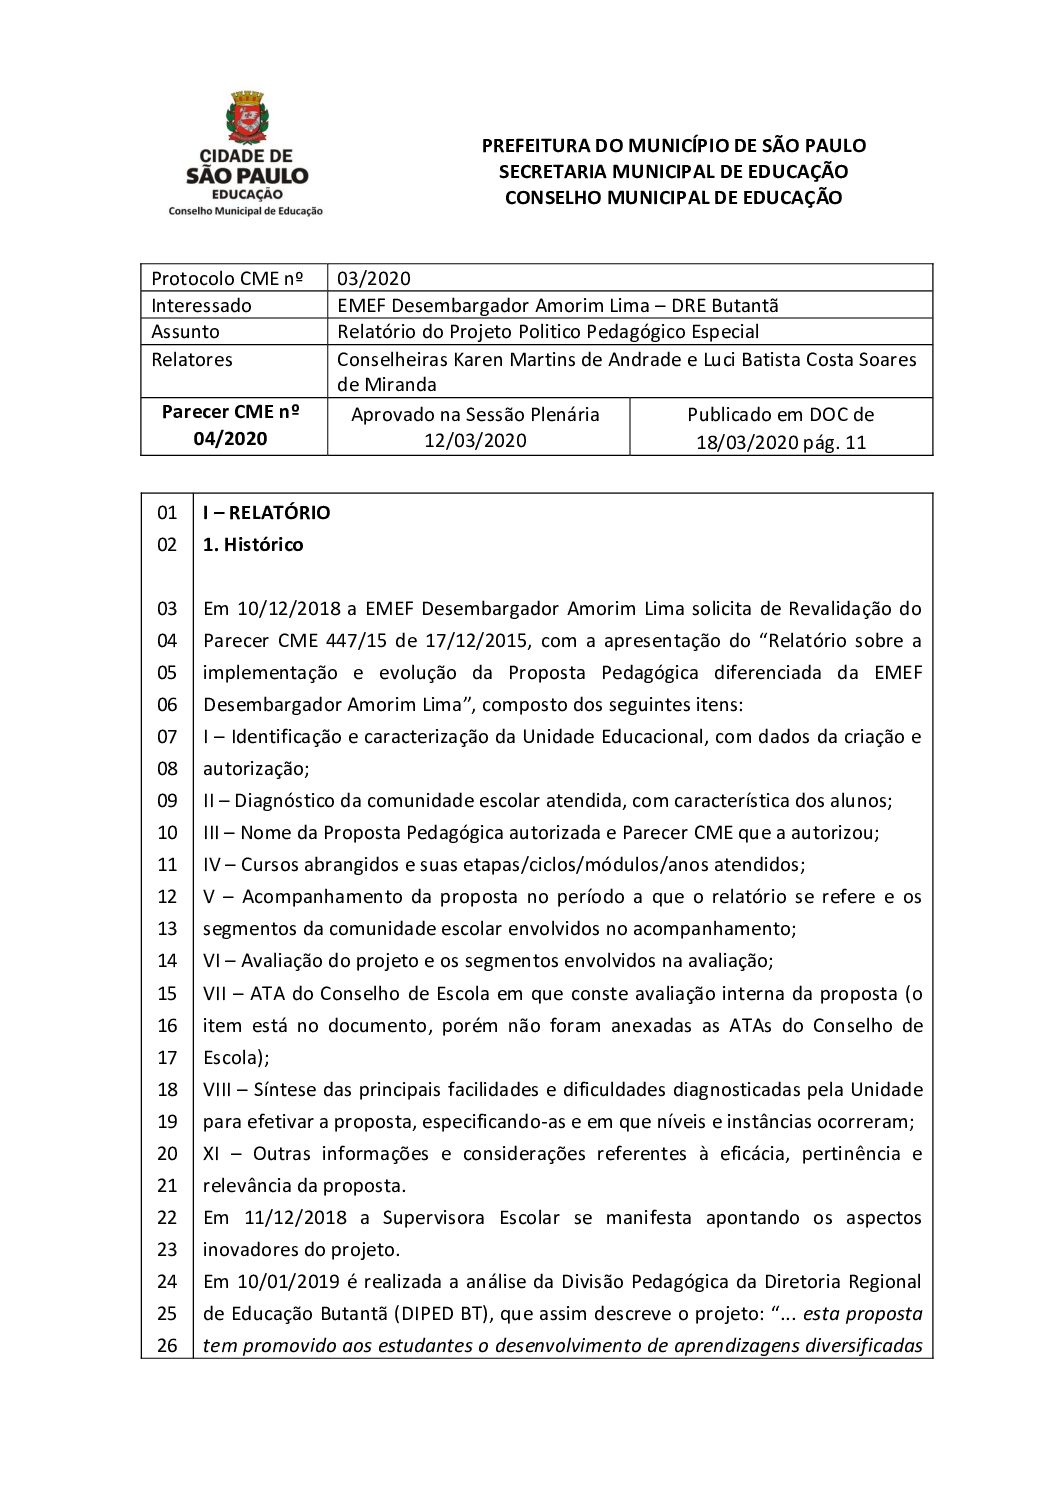 Parecer CME nº 04/2020 - EMEF Desembargador Amorim Lima (DRE Butantã) - Relatório do Projeto Politico Pedagógico Especial 